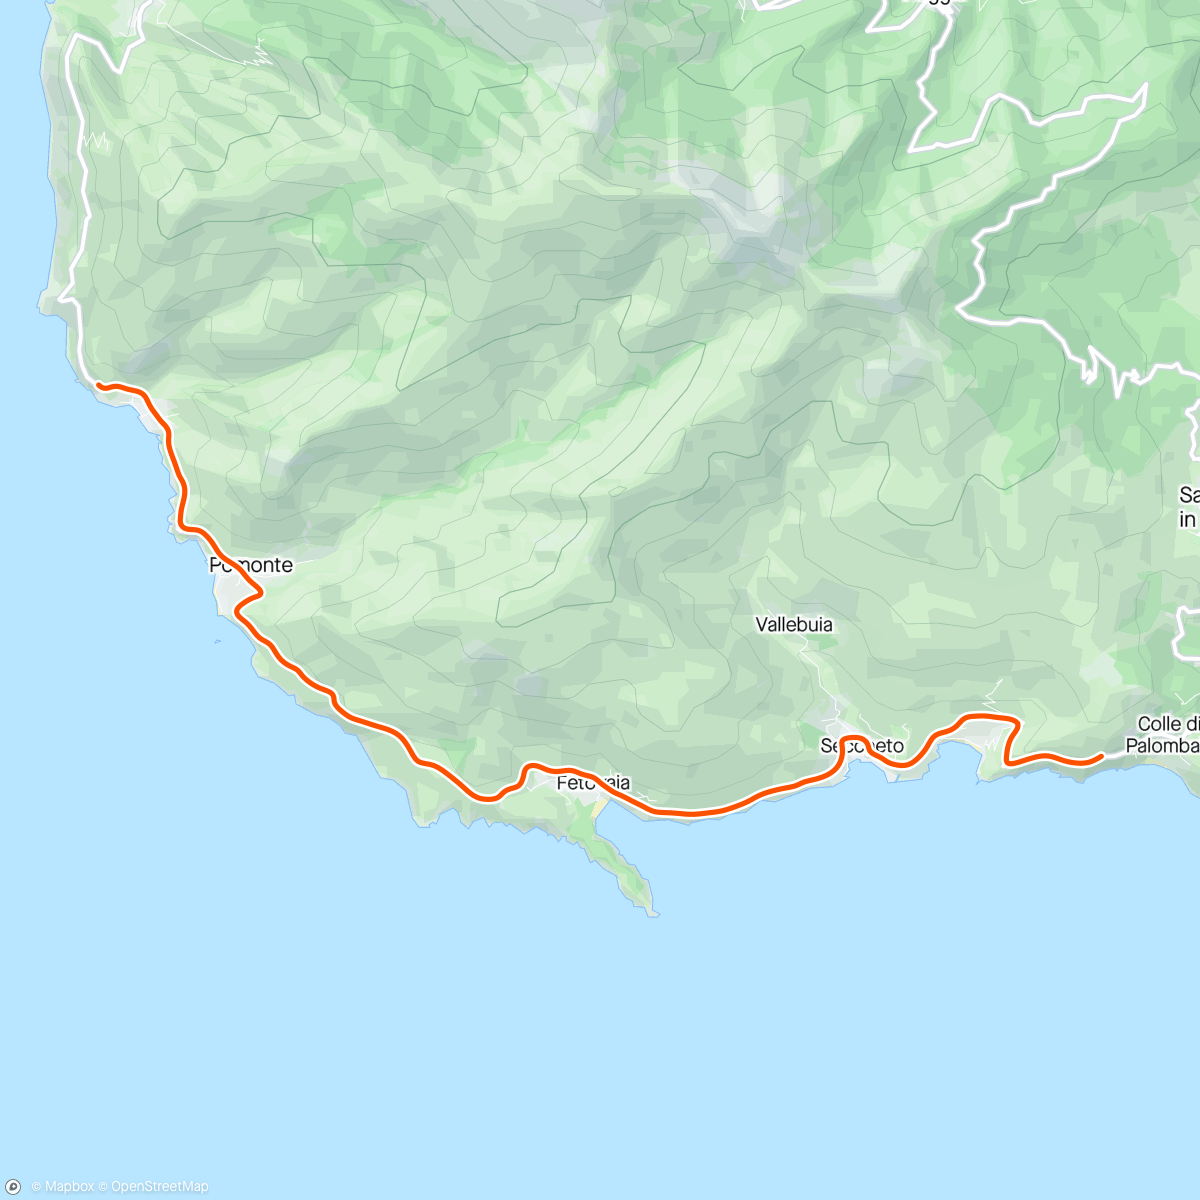 アクティビティ「Kinomap - Elba Island - Cavoli Fetovaia Pomonte - Beautiful Tuscany Tour 🌞 🏖️ 🌊 🏄🏾」の地図